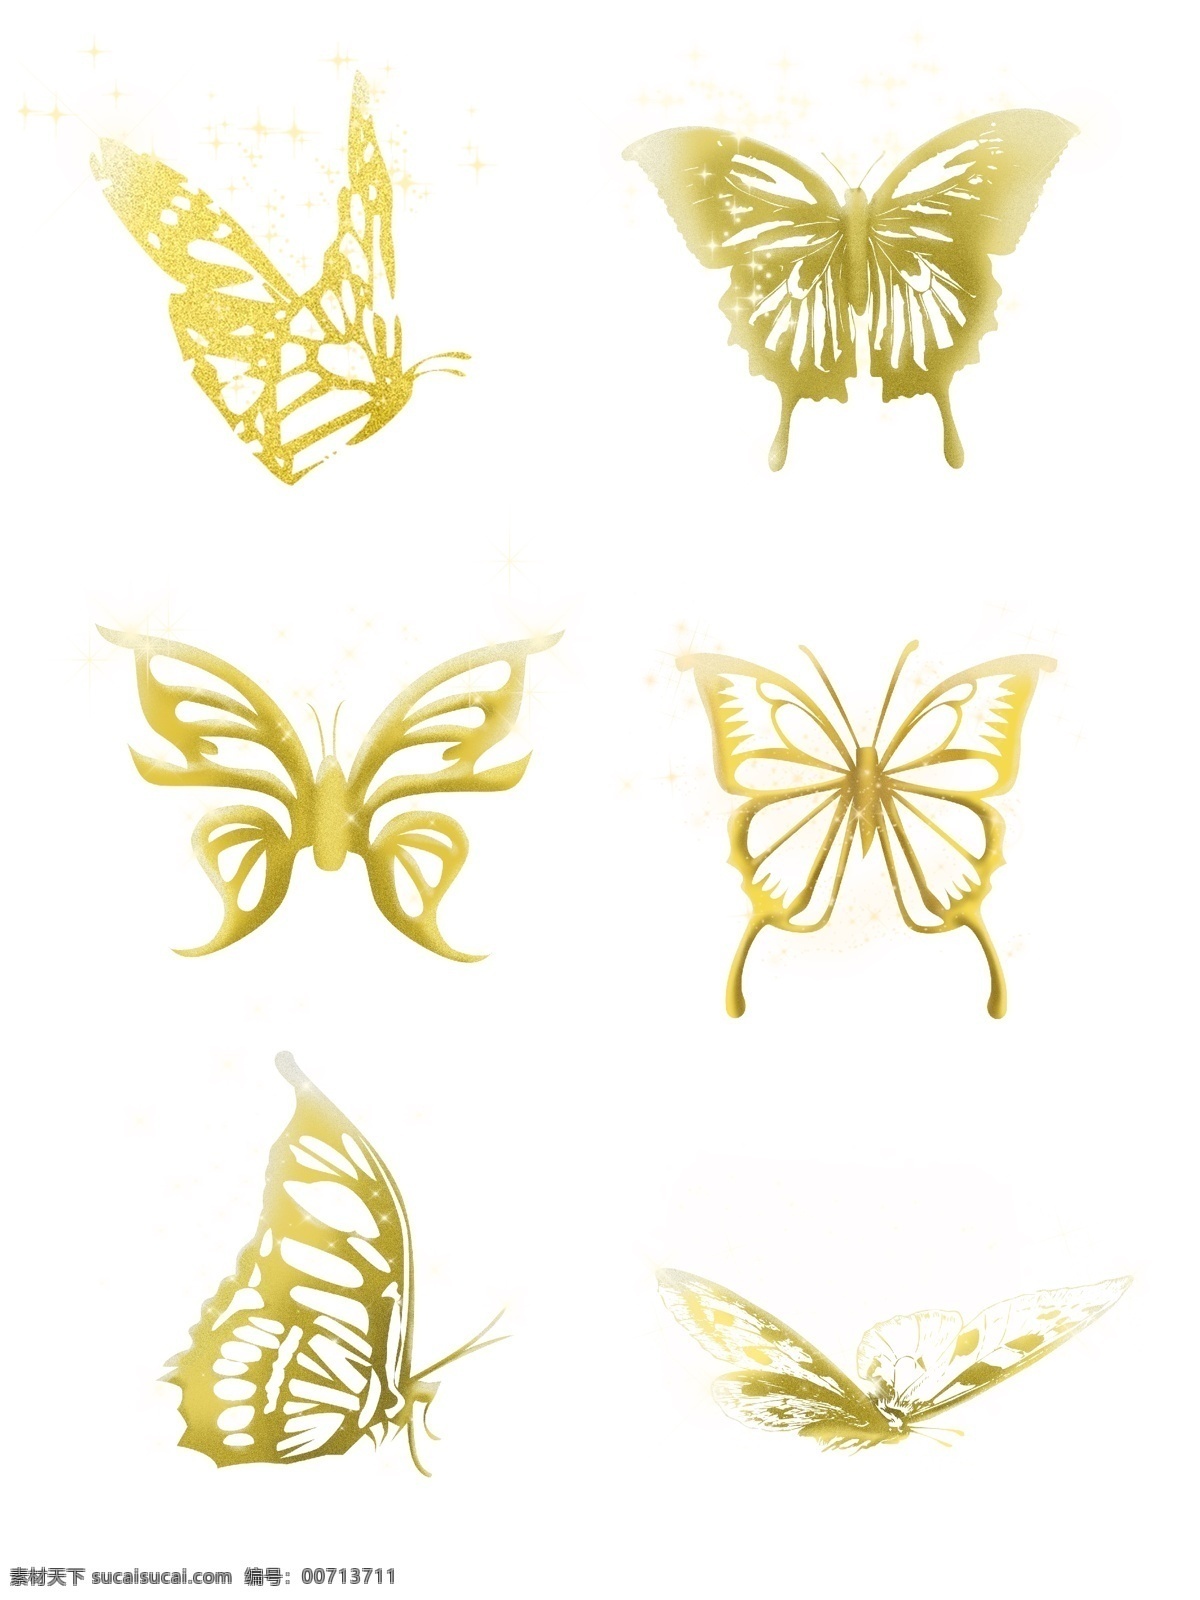 金色蝴蝶套图 金色 蝴蝶 套图 各种的蝴蝶 蝴蝶套图 包装设计